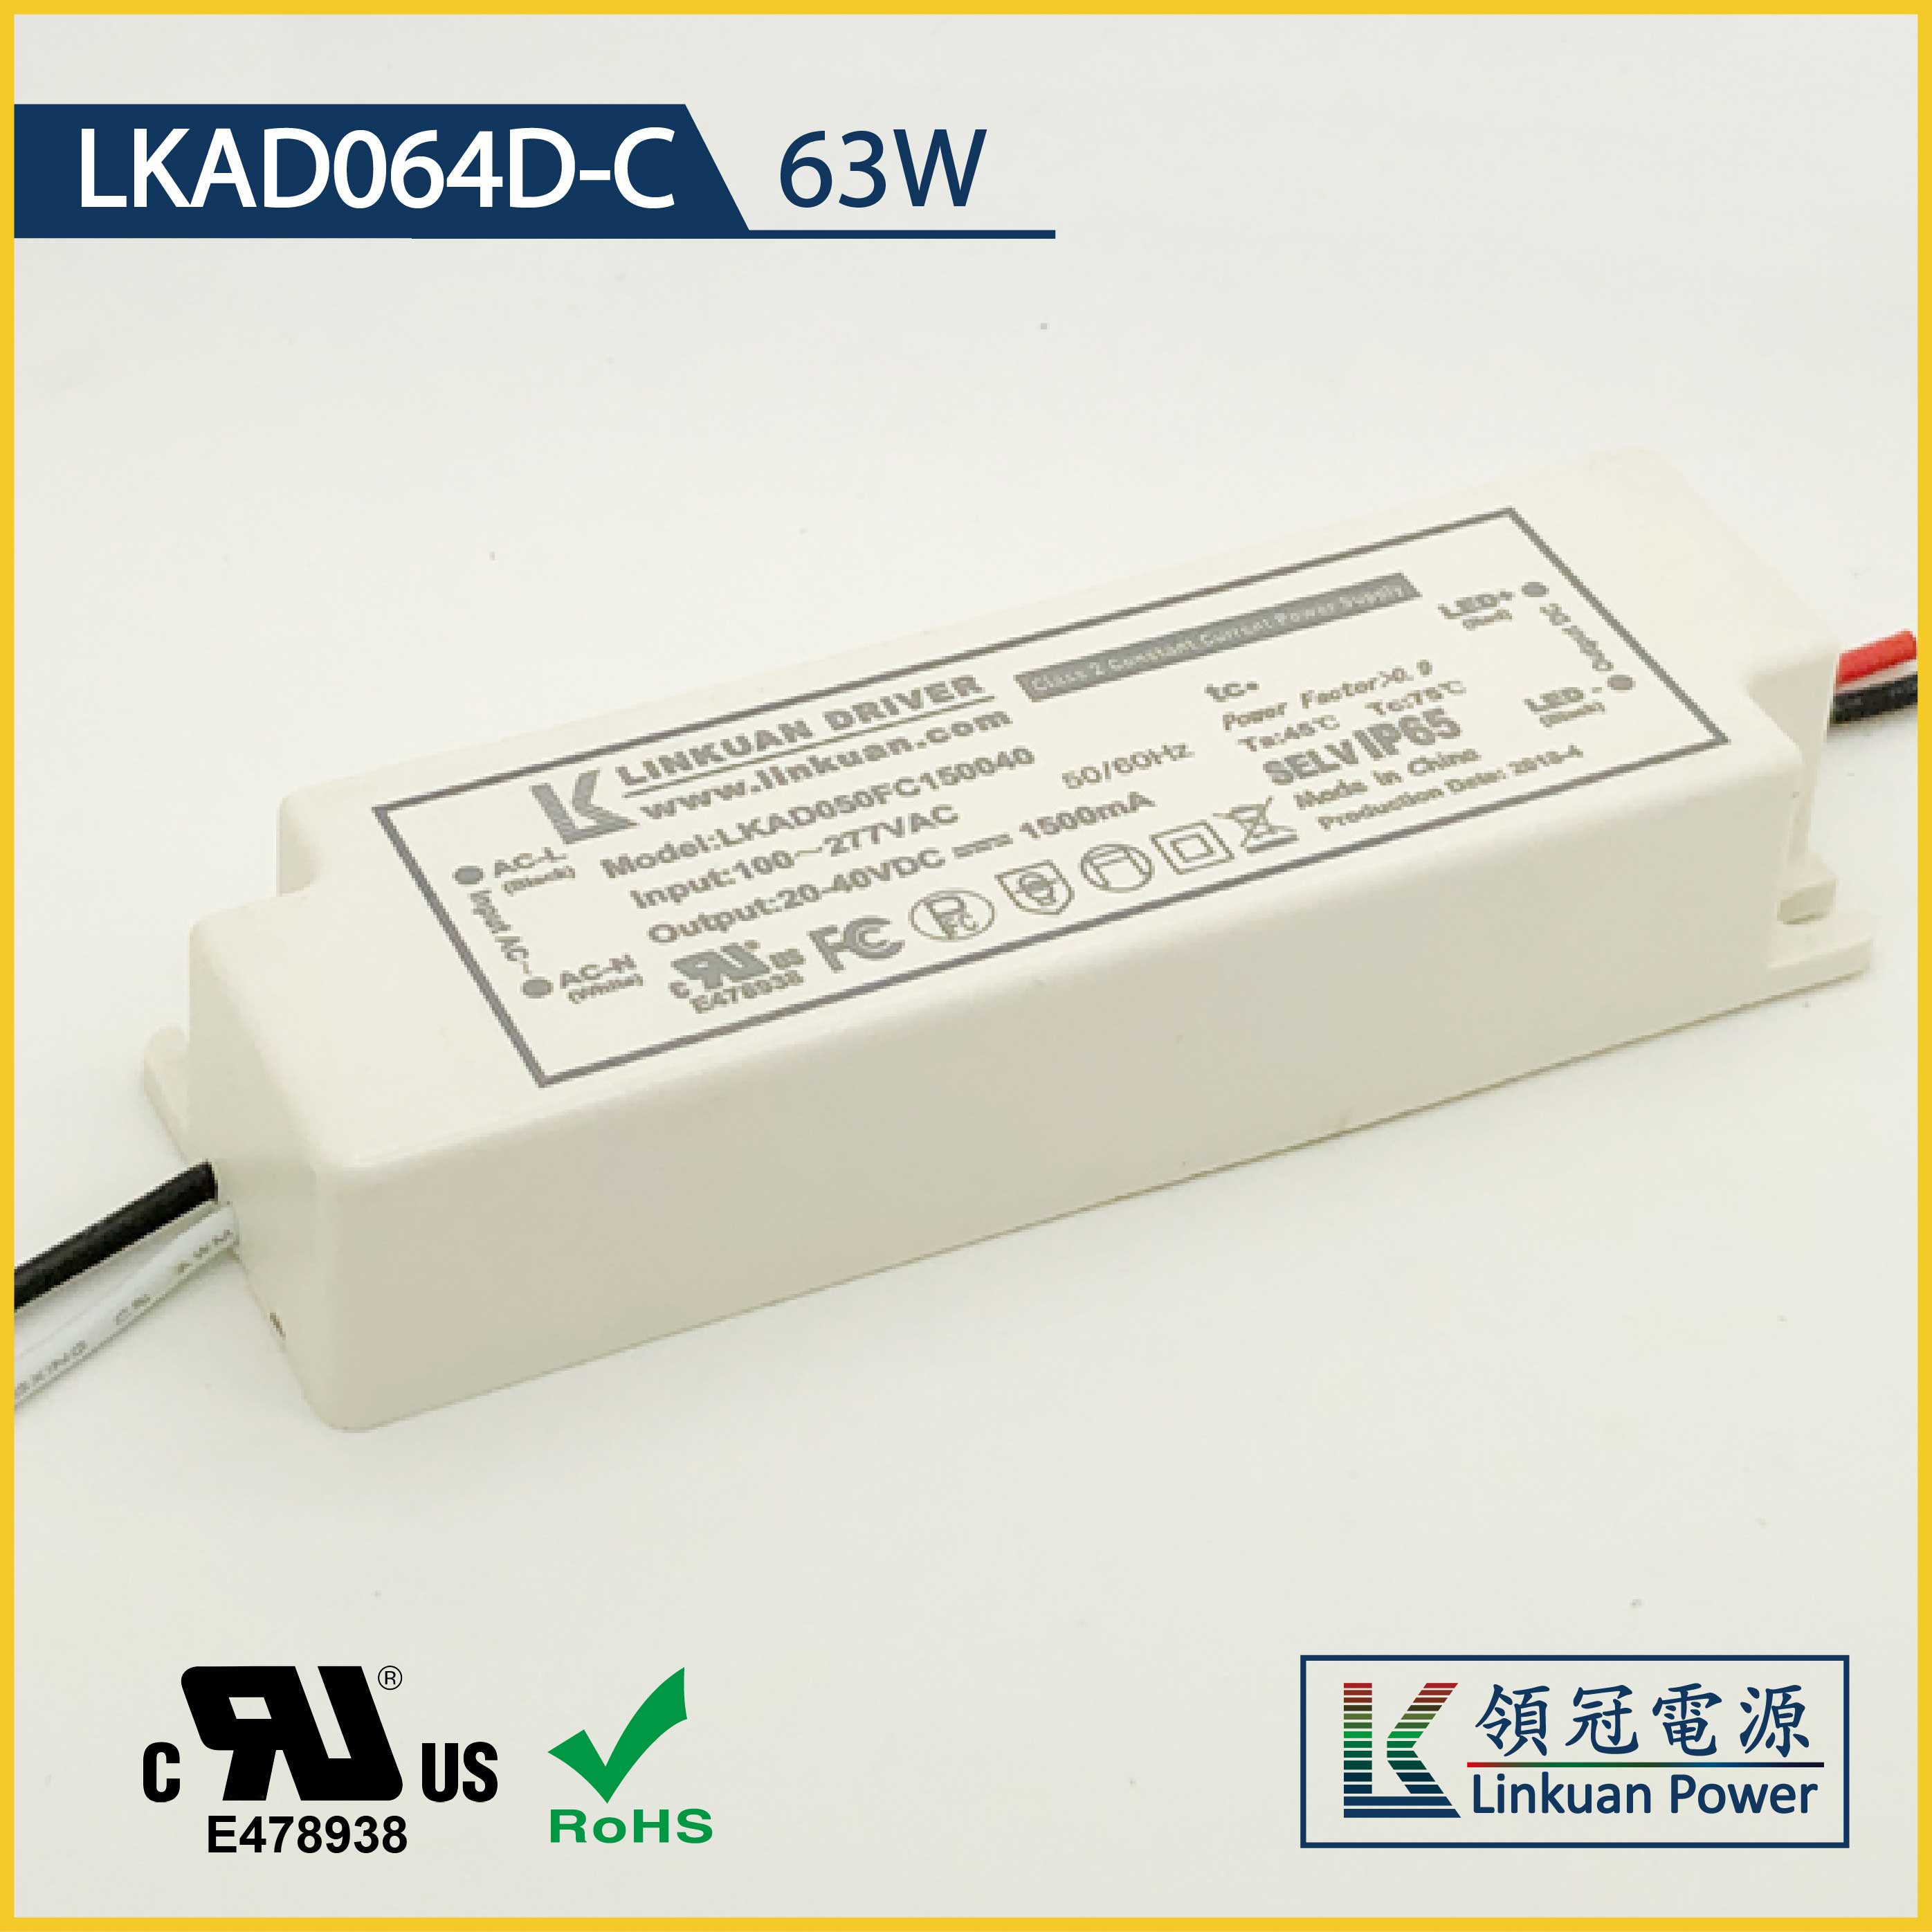 LKAD064D-C 63W 20-42V 1500mA 0-10V Dimming LED drivers